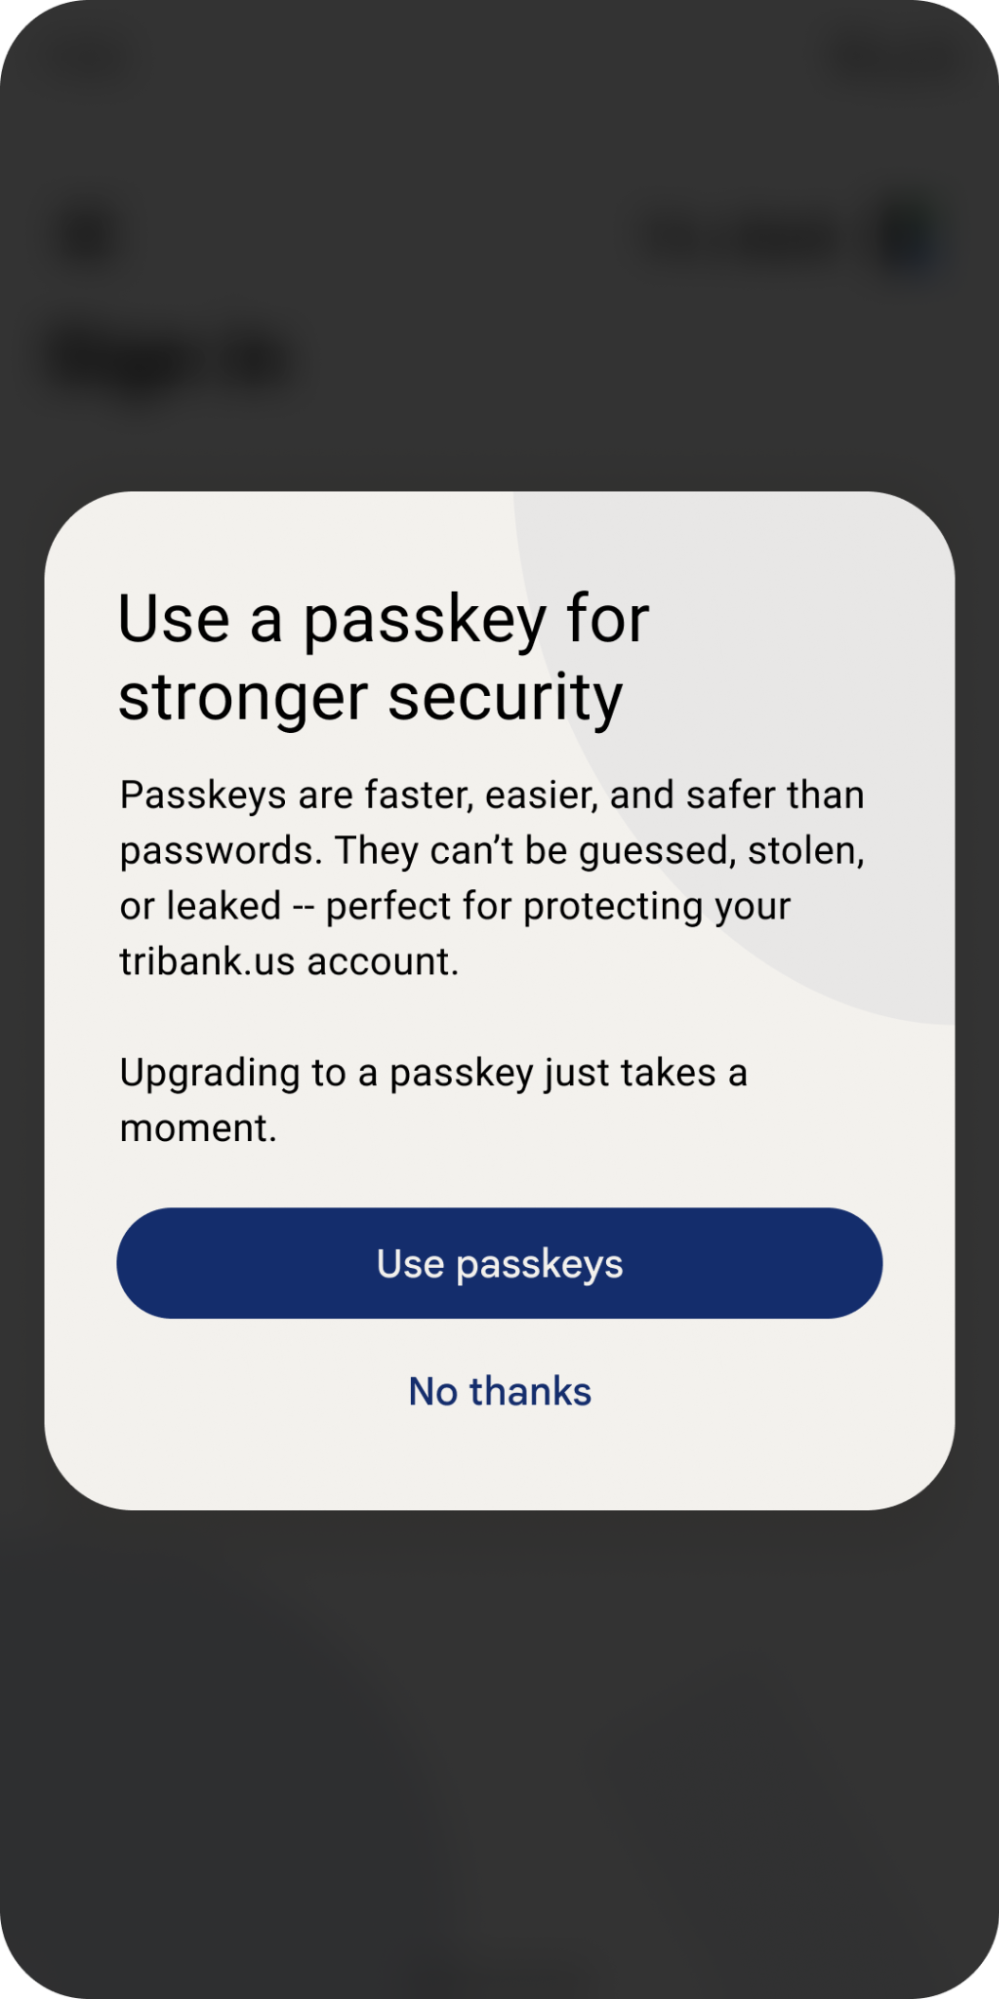 پاپ آپ به کاربر پیشنهاد می دهد از کلیدهای عبور برای رمزهای عبور سریع تر و ایمن تر استفاده کند